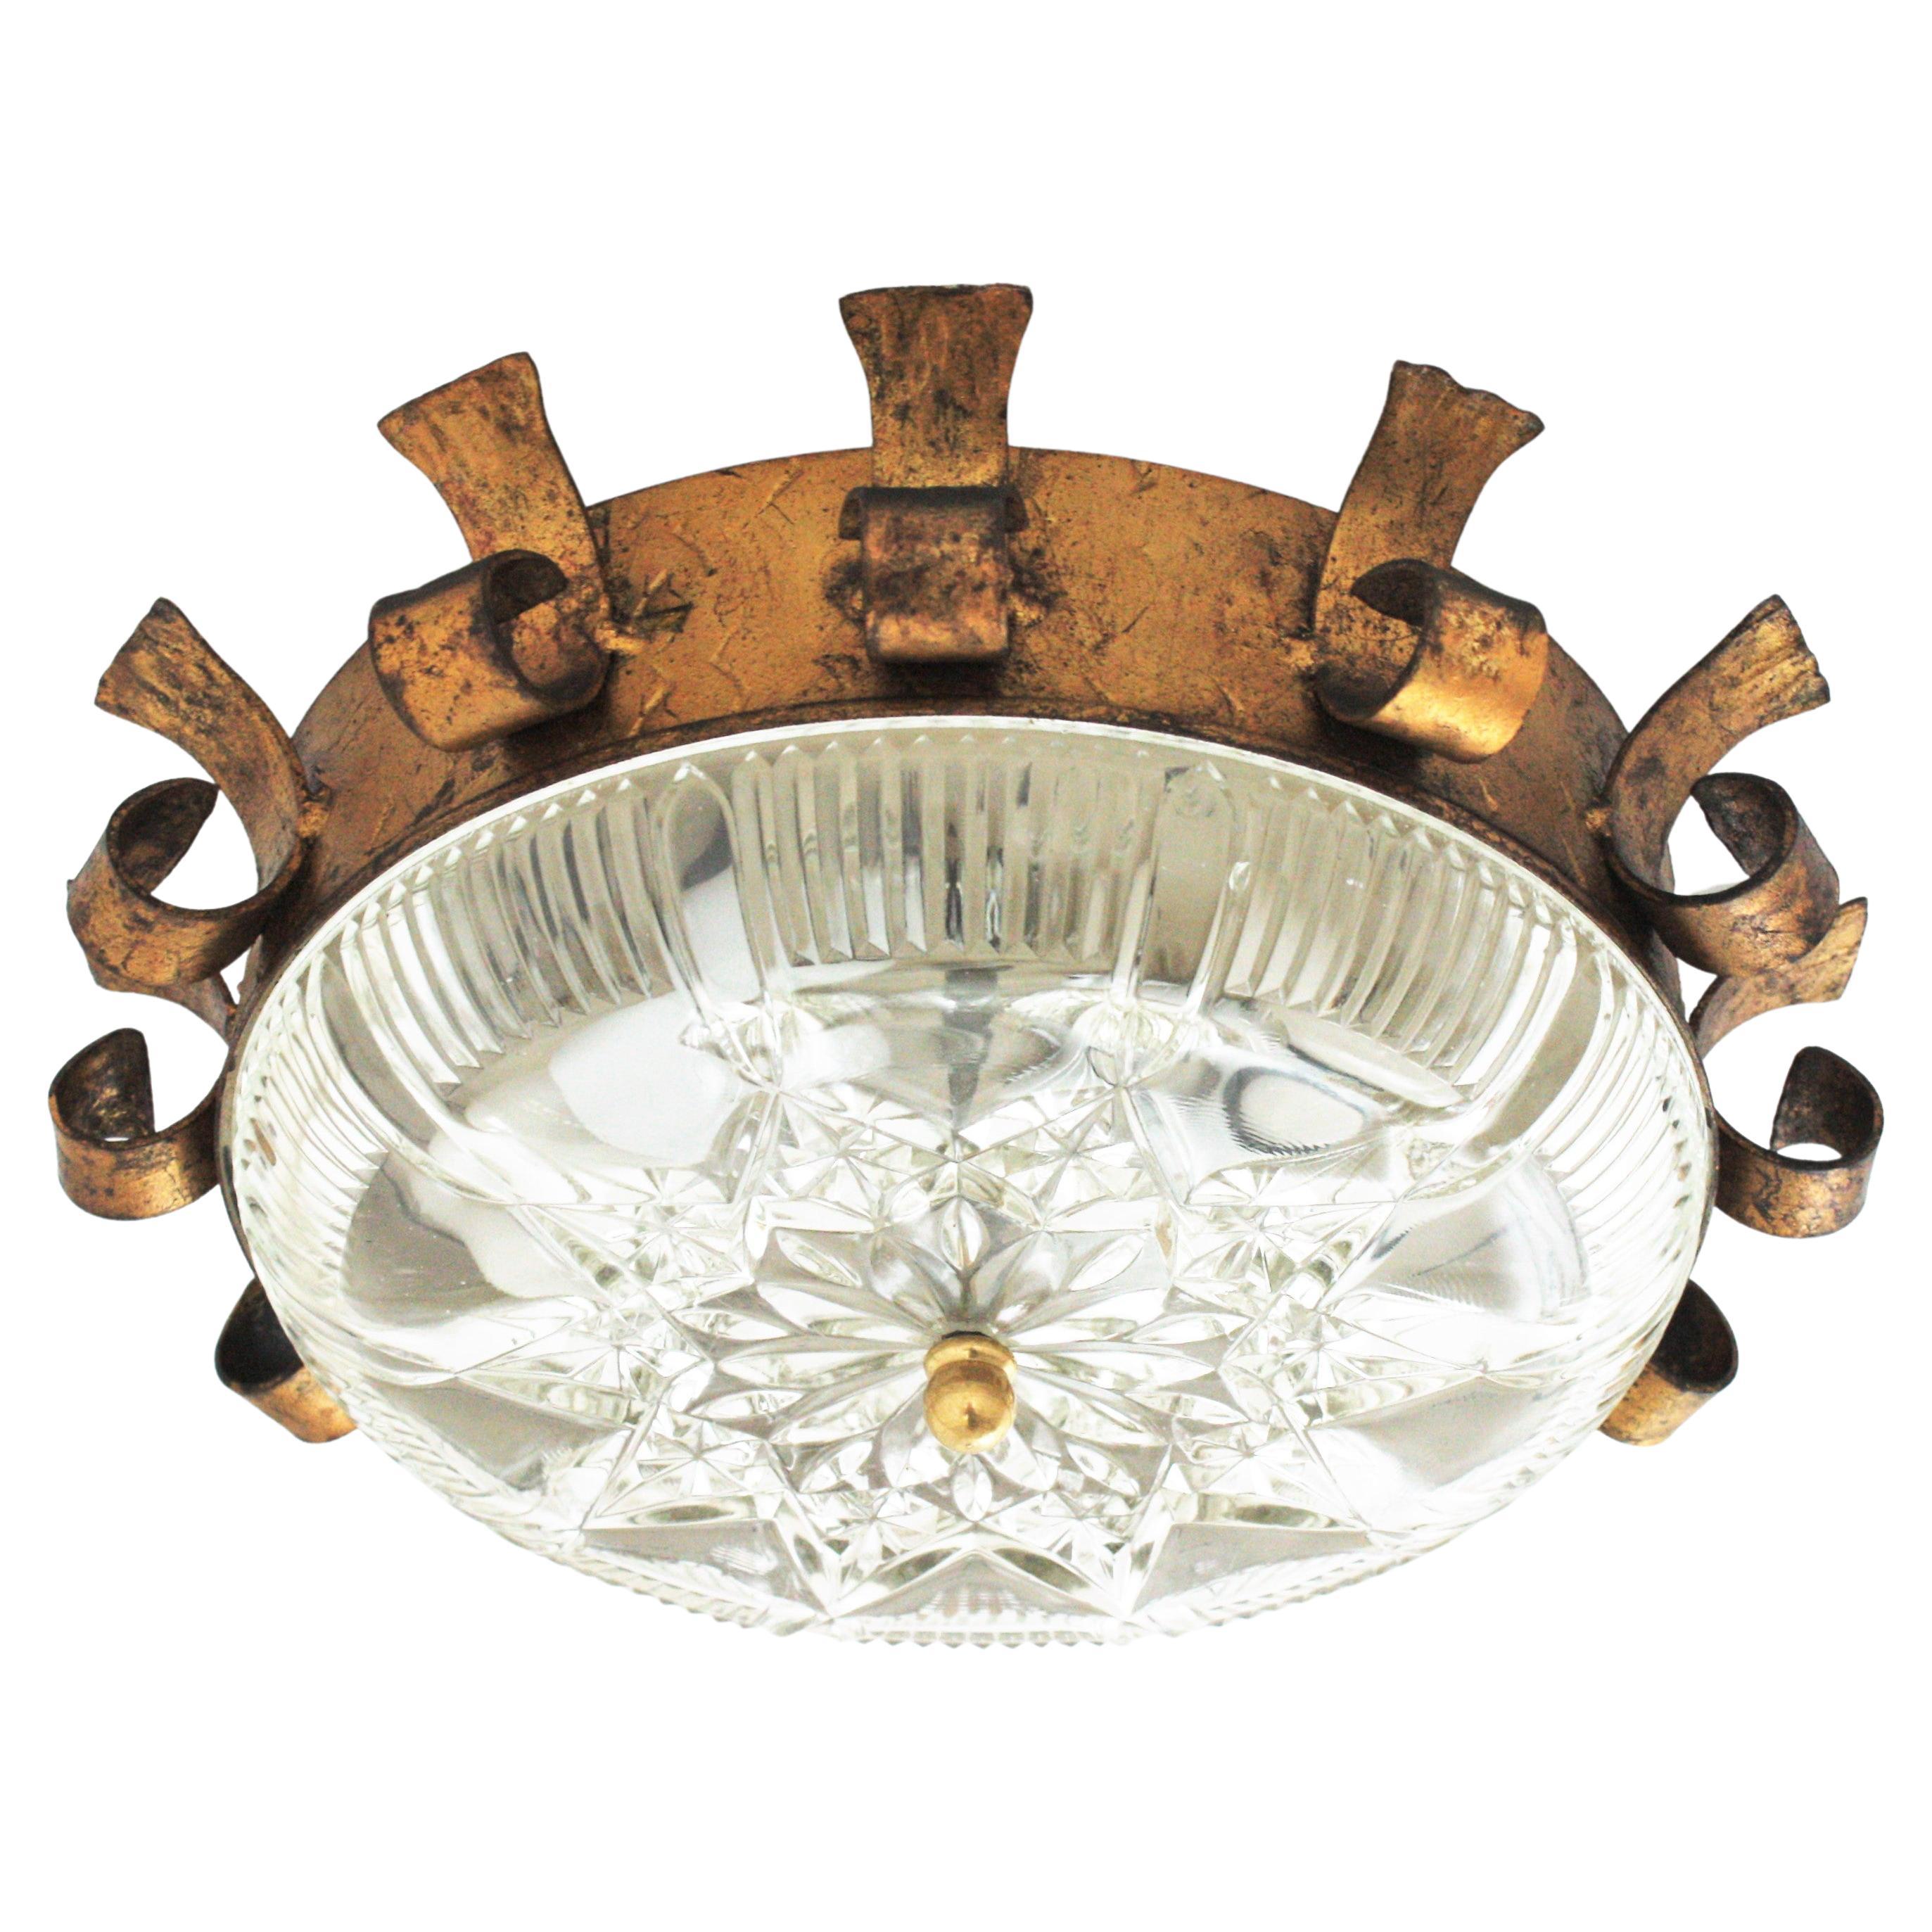 Luminaire Sunburst Crown, fer doré, feuille d'or, verre pressé
Attrayant plafonnier de style néoclassique en forme de soleil de la période moderne du milieu du siècle, Espagne, années 1950.
Ce plafonnier présente une structure en forme de couronne